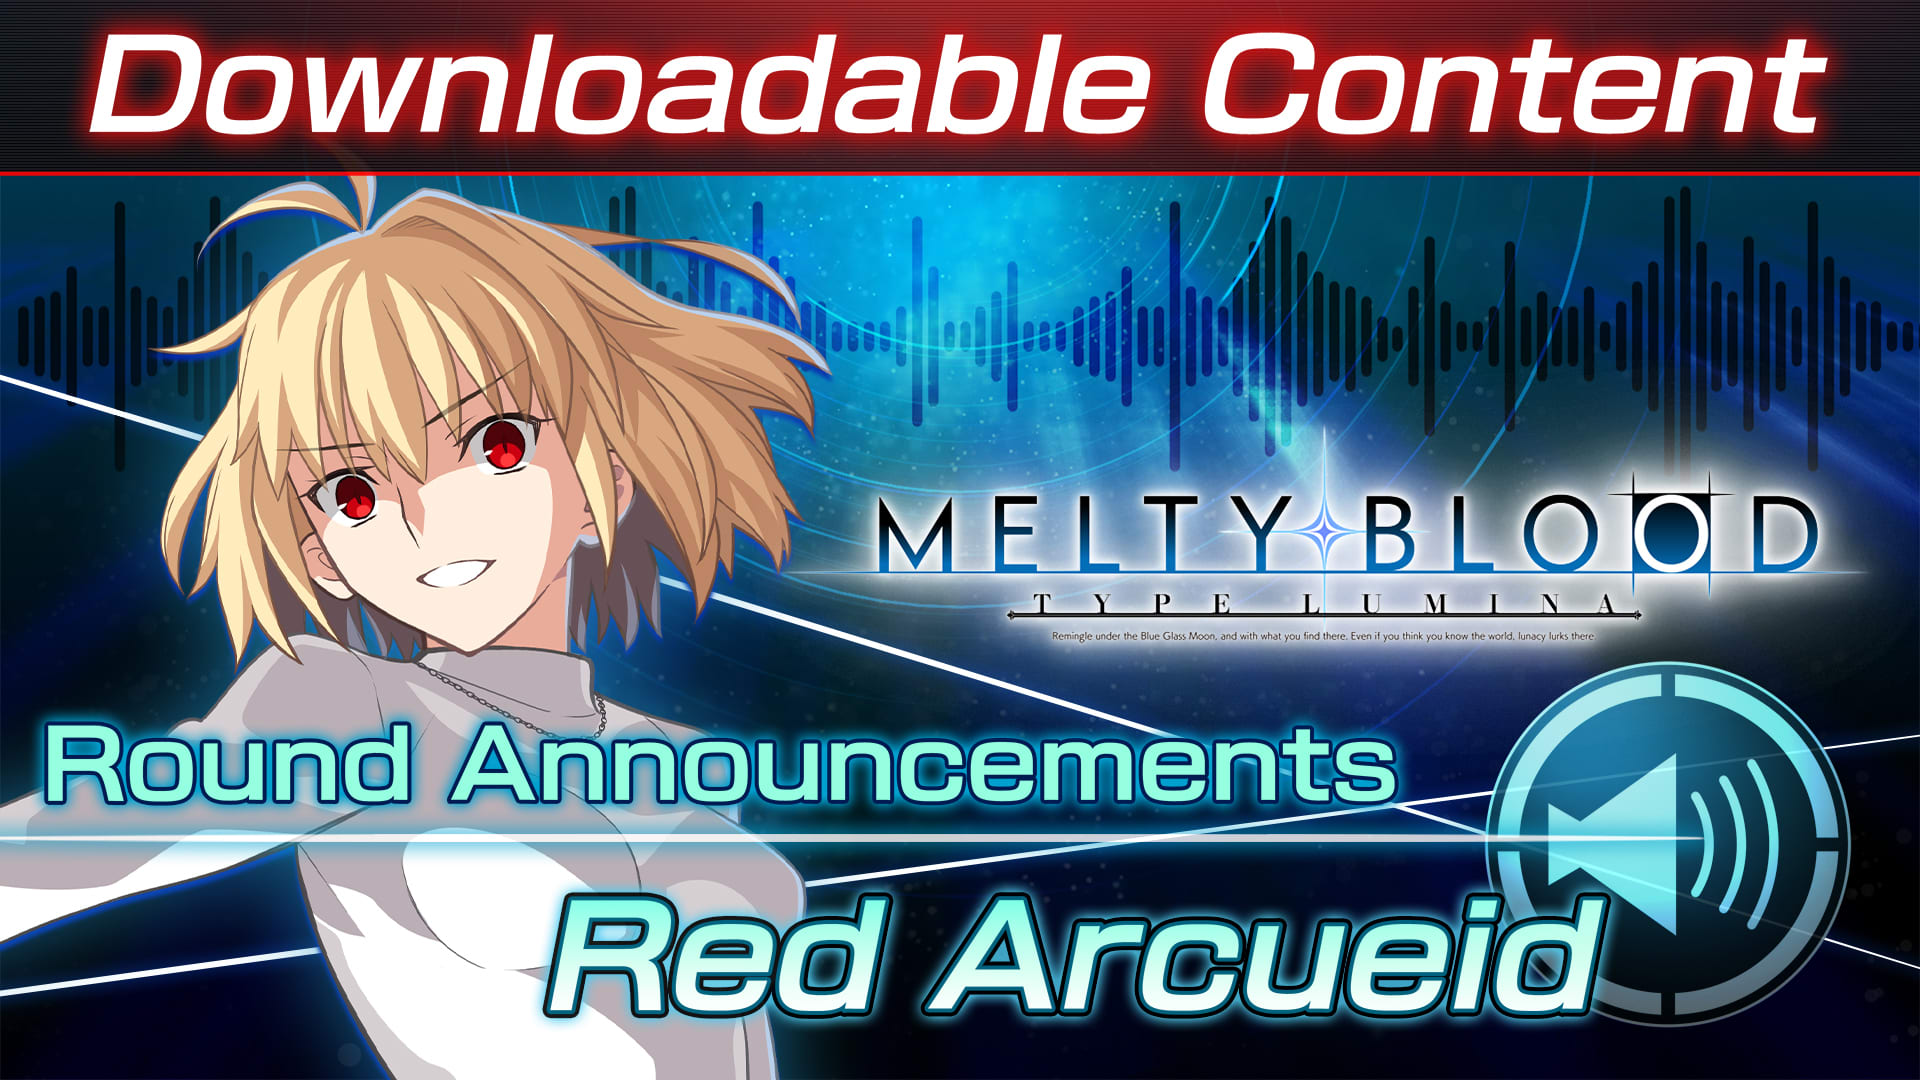 DLC: Red Arcueid Round Announcements